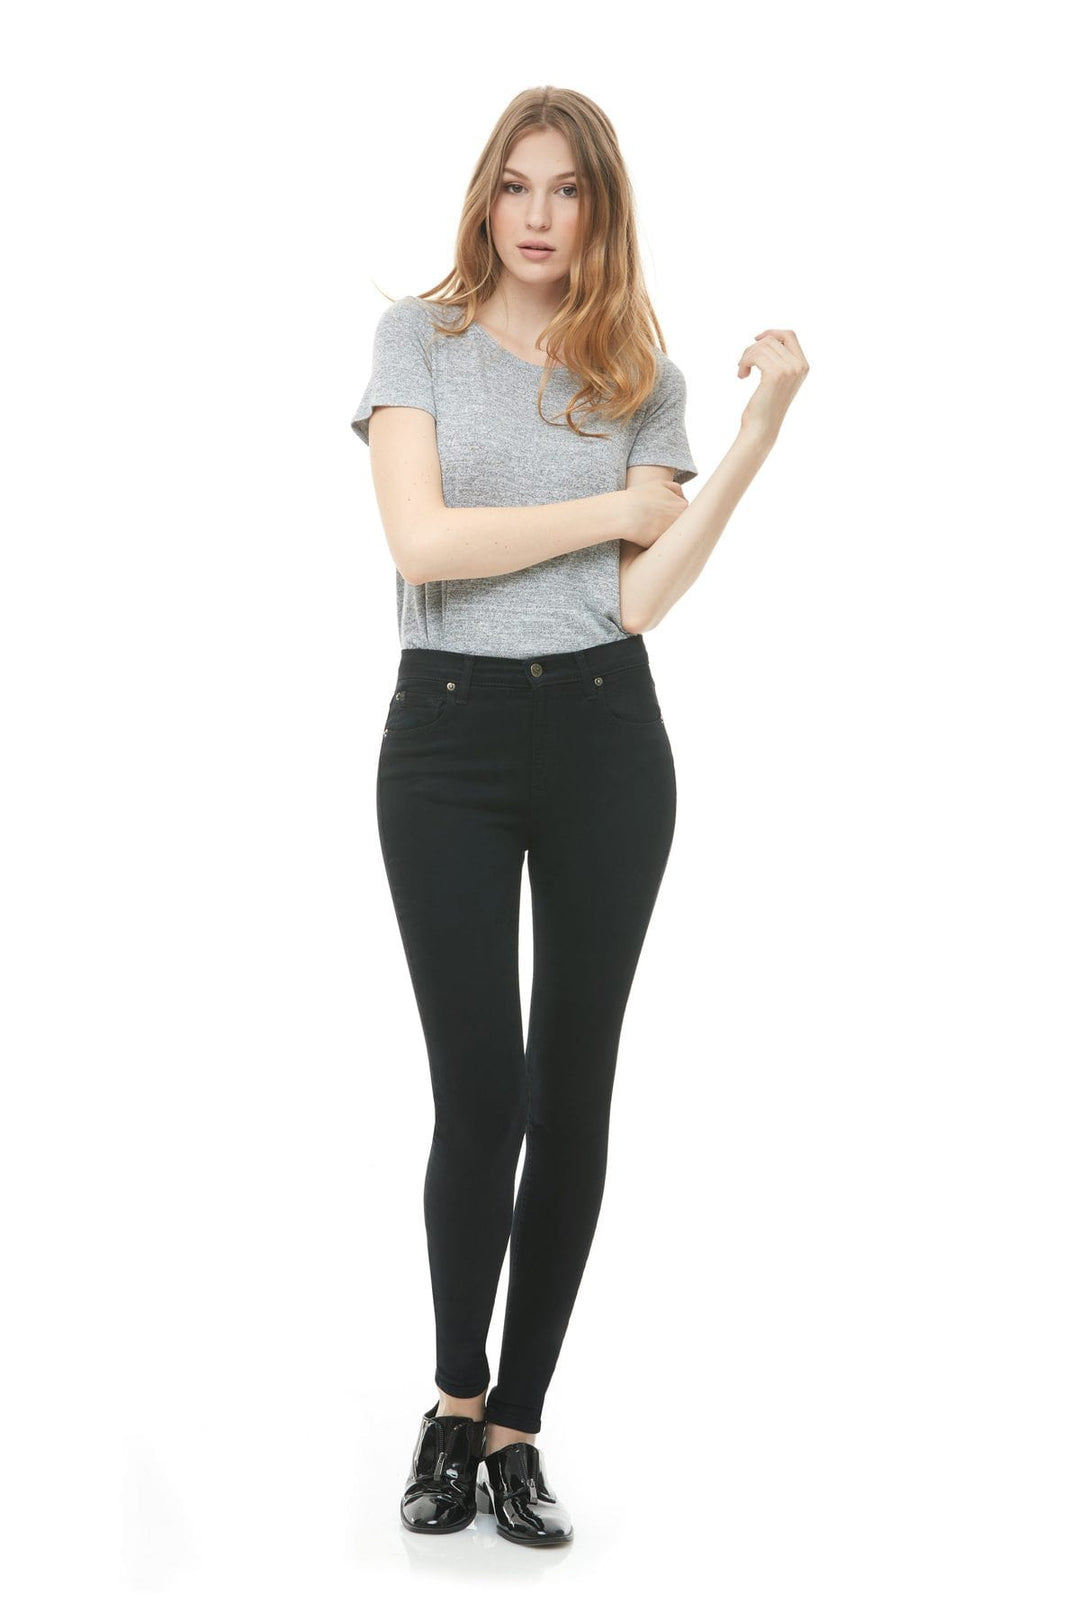 Jean skinny taille contemporaine Yoga Jeans - Noir Pitch *Dernière chance